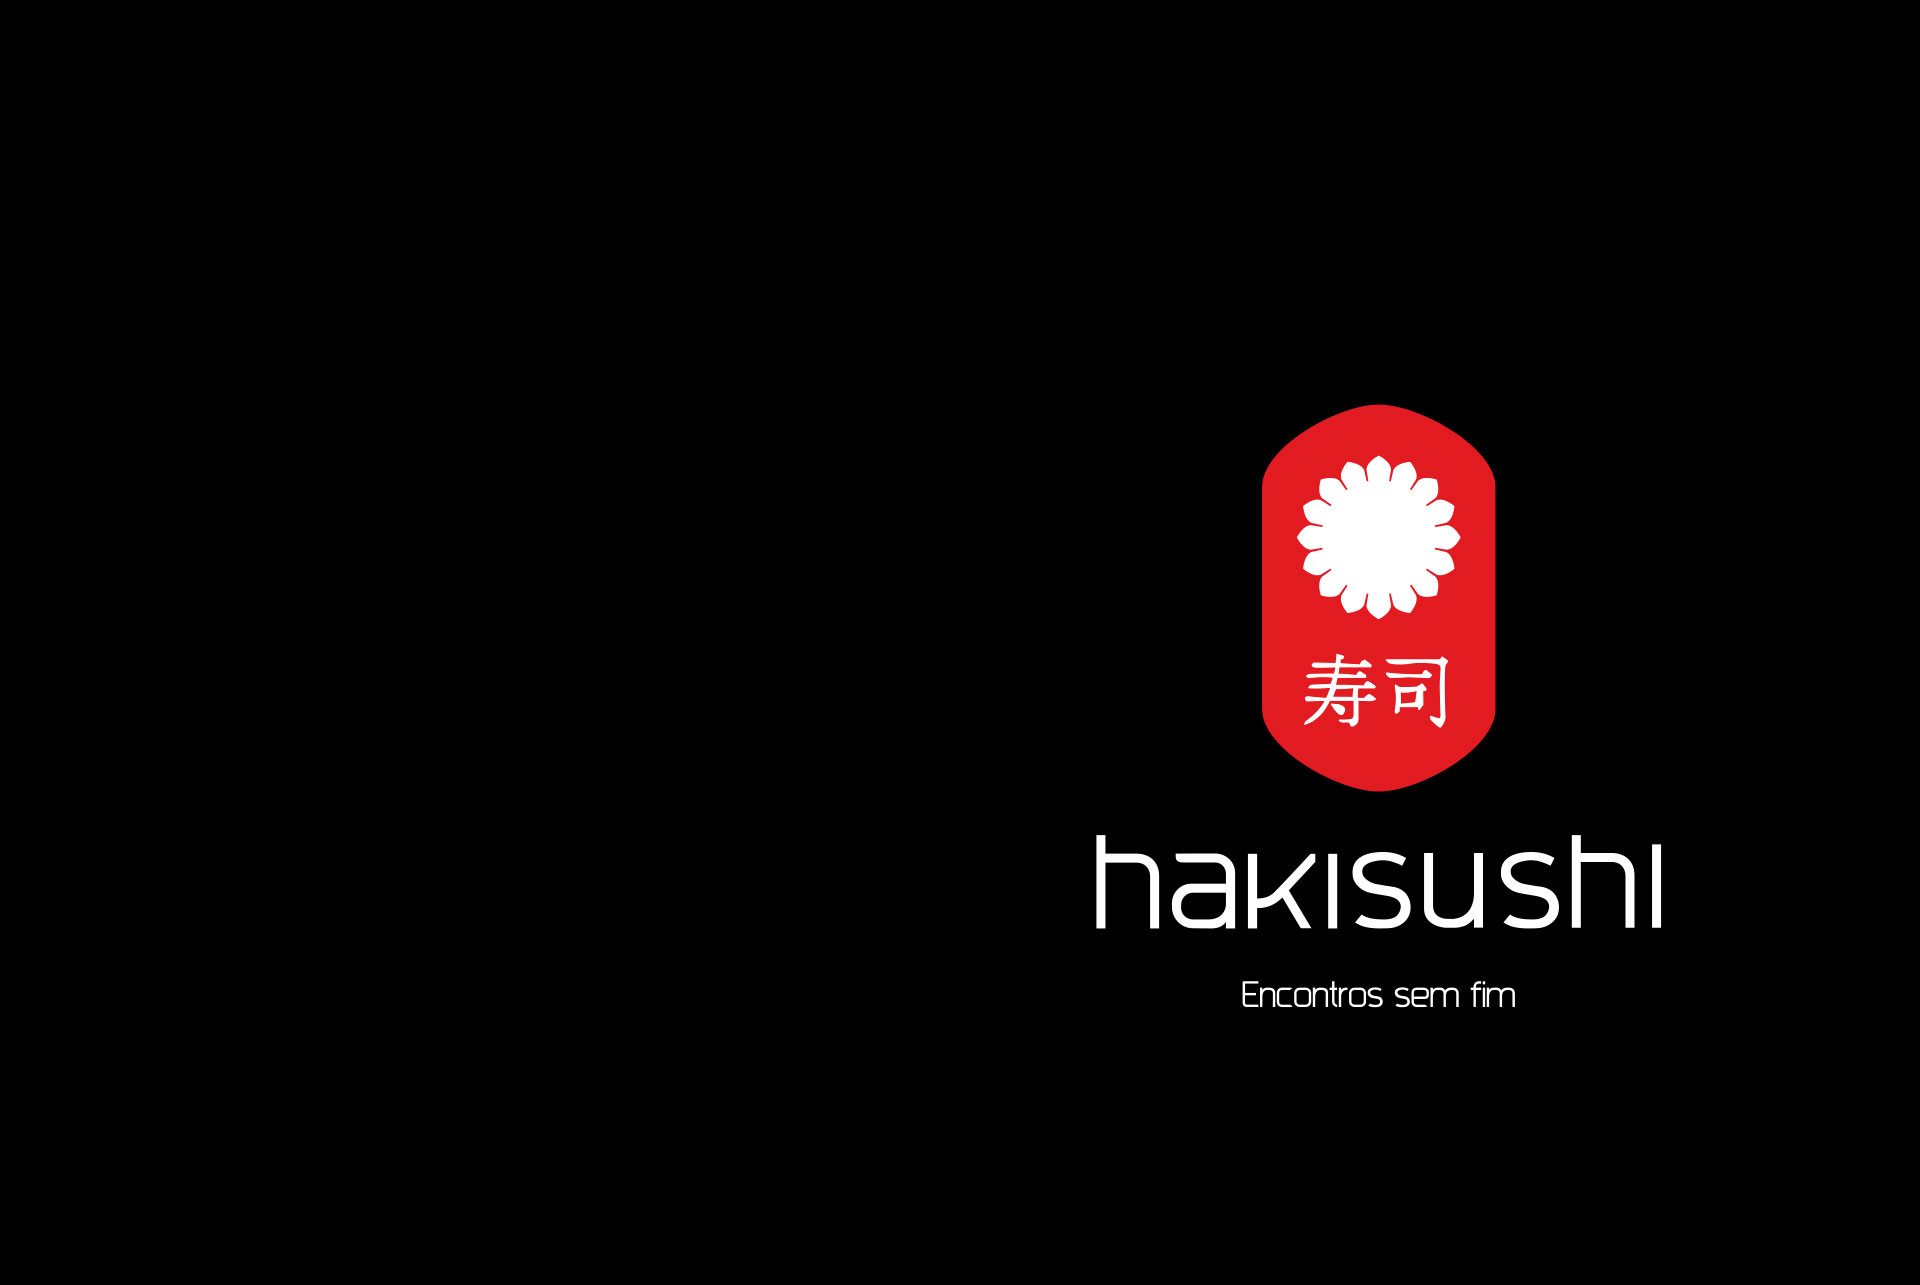 Hakisushi